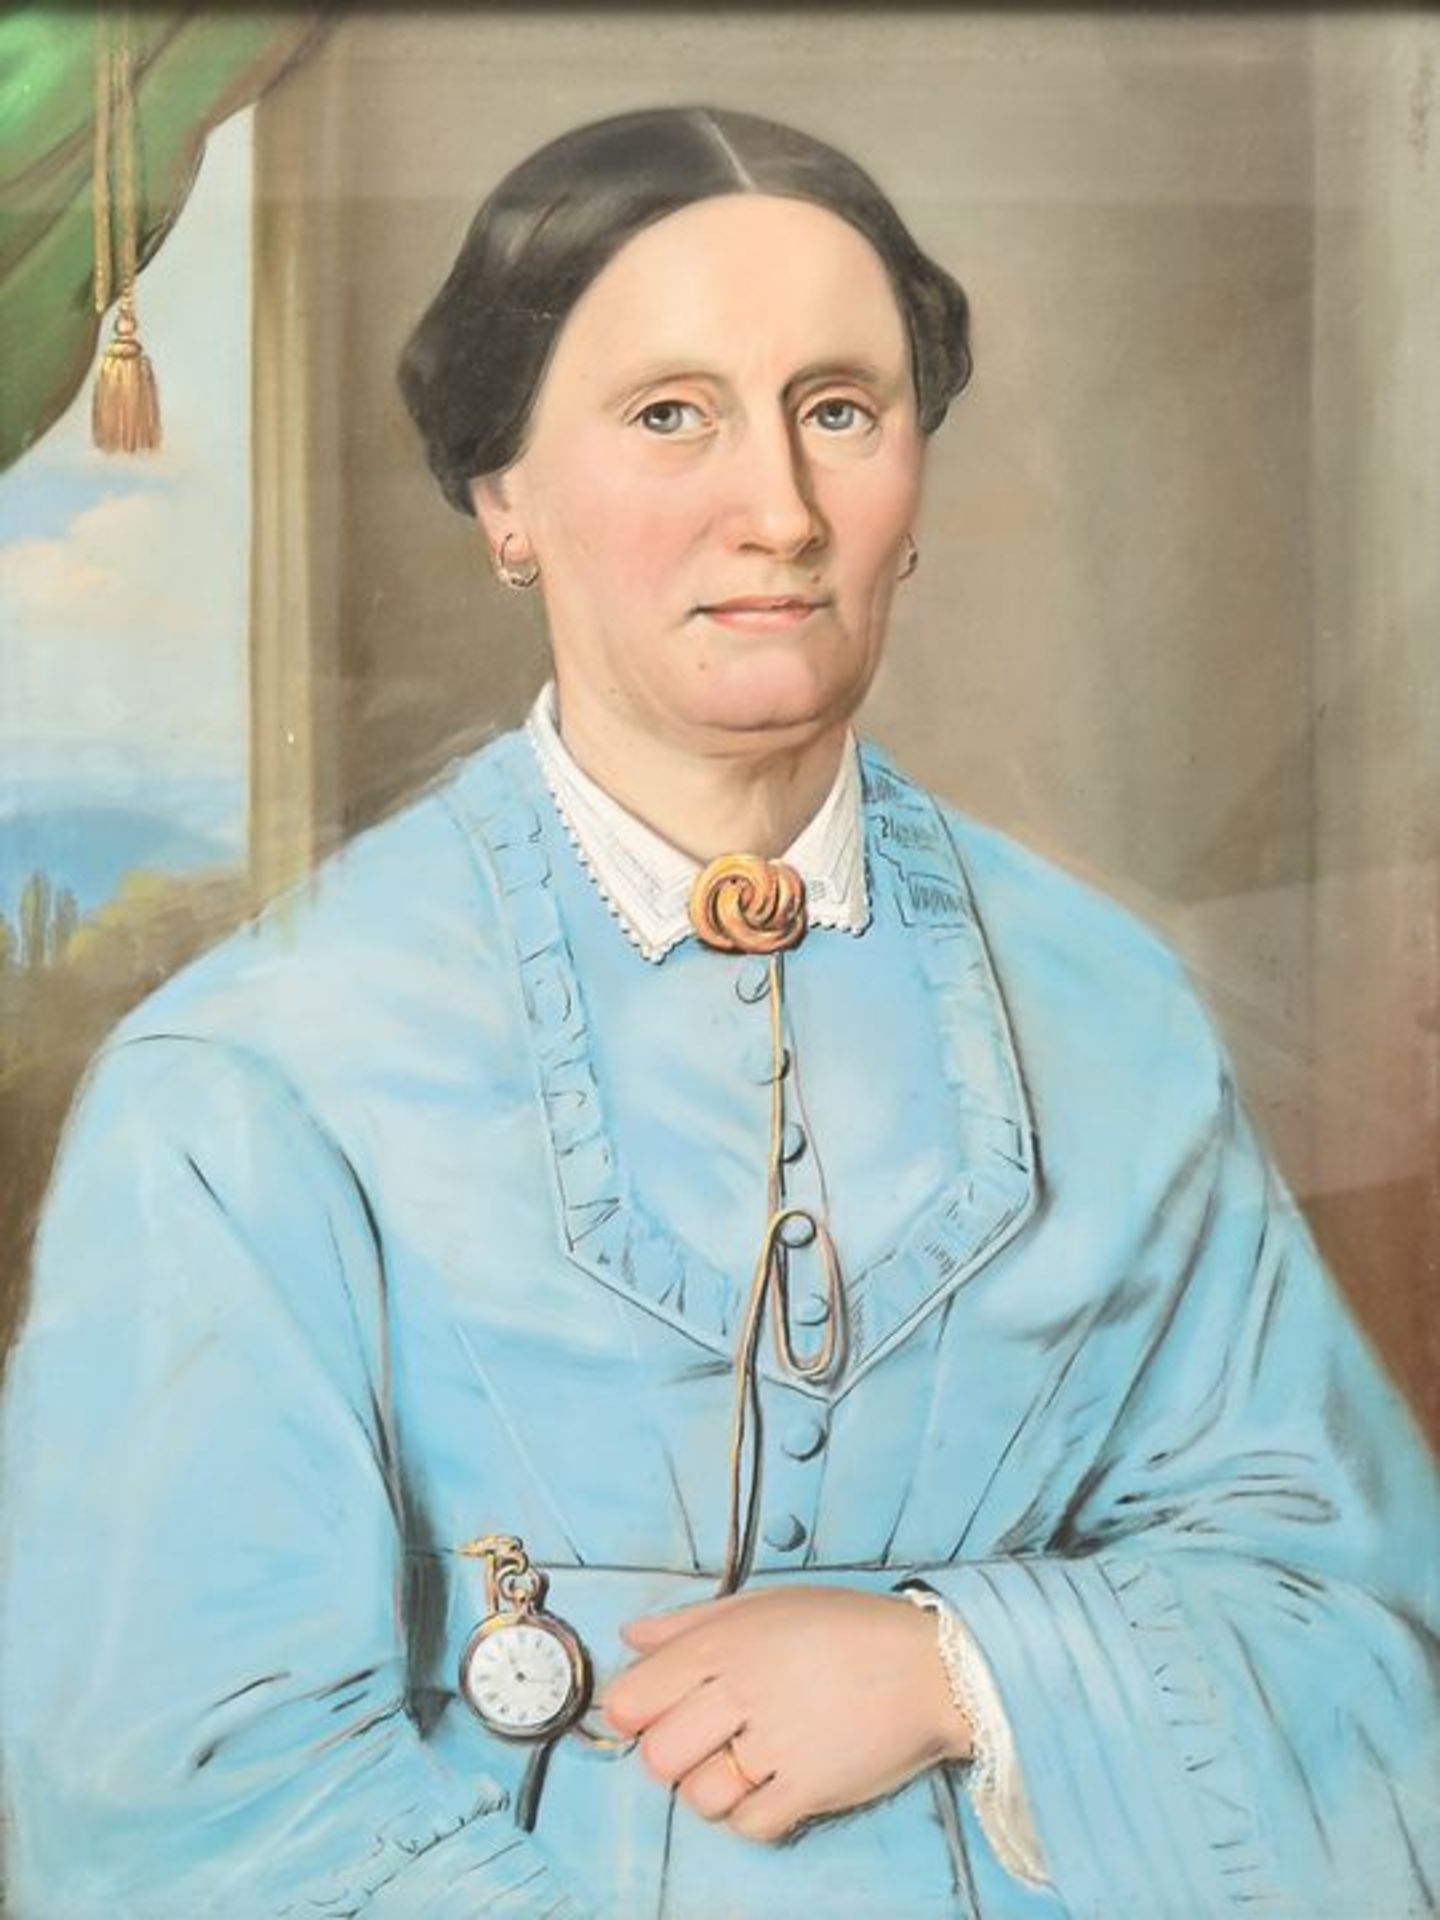 Damenportrait, Pastell / Portrait of a Lady, Pastels